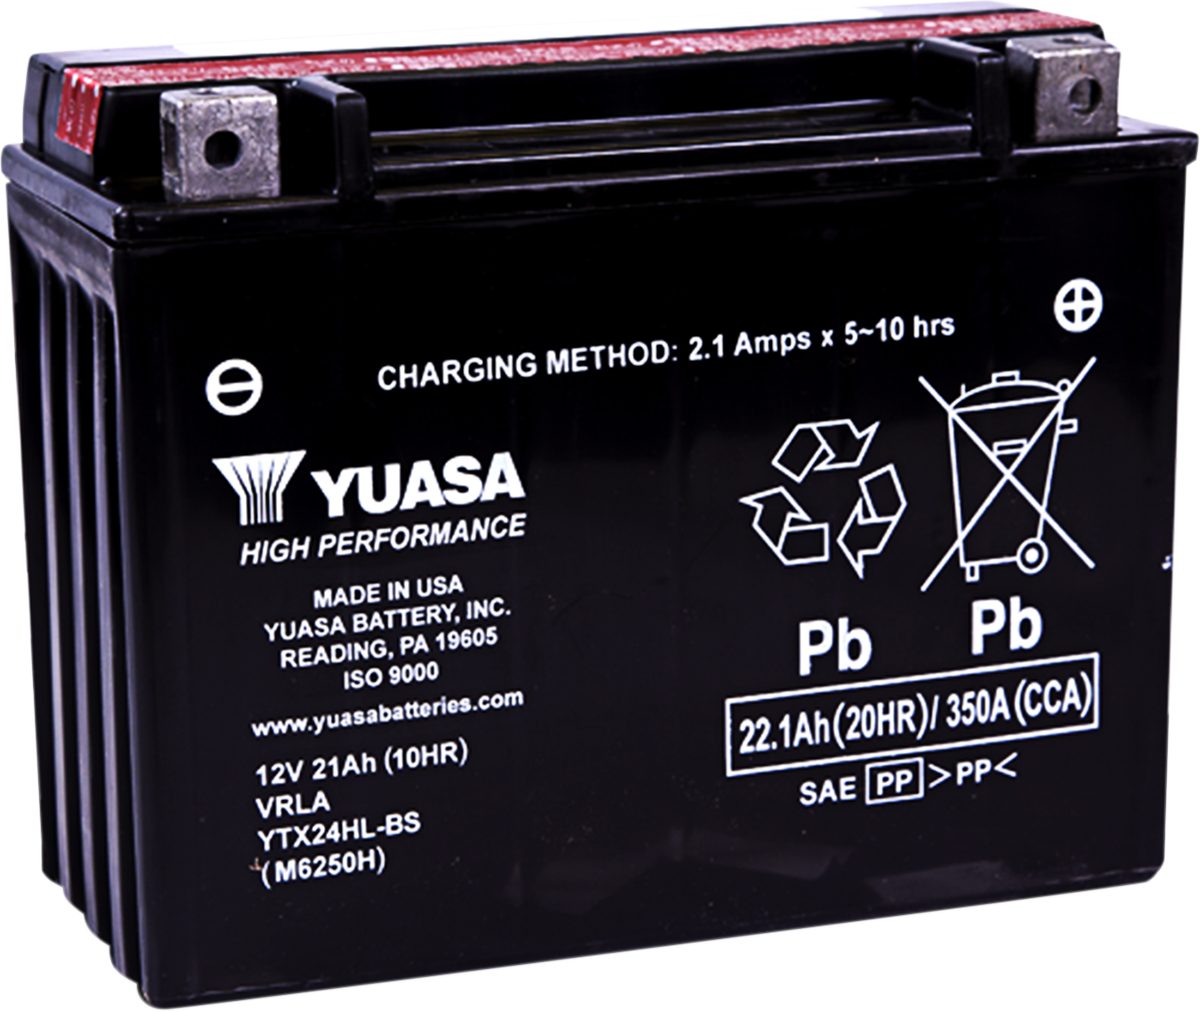 YUASA AGM Battery - YTX24HL-BS 1.08 LTR YUAM6250H